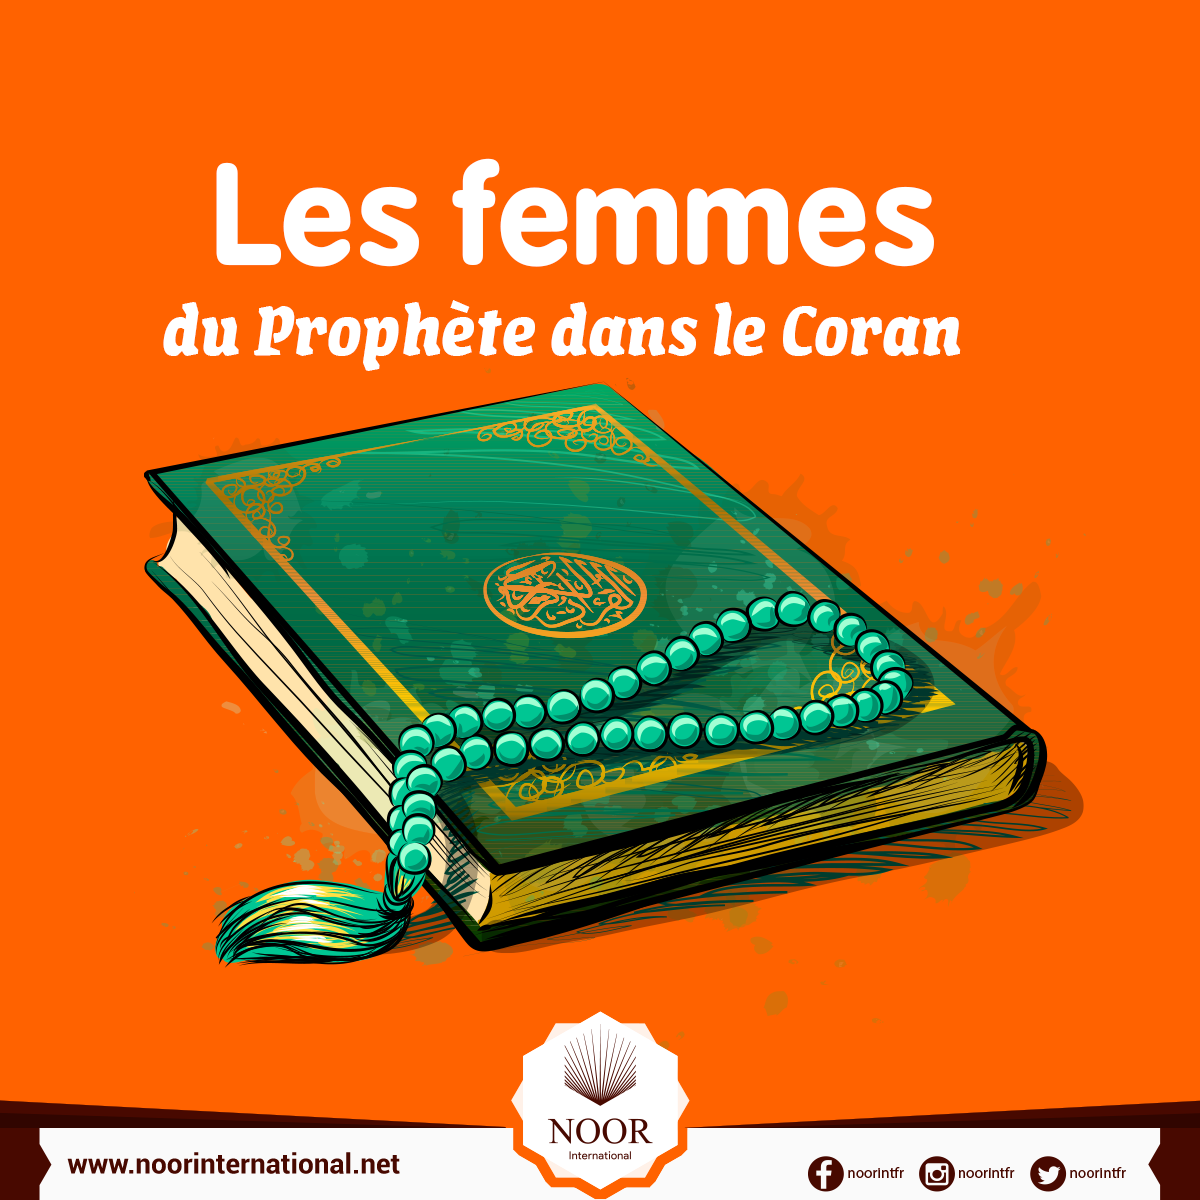 Les femmes du Prophète dans le Coran